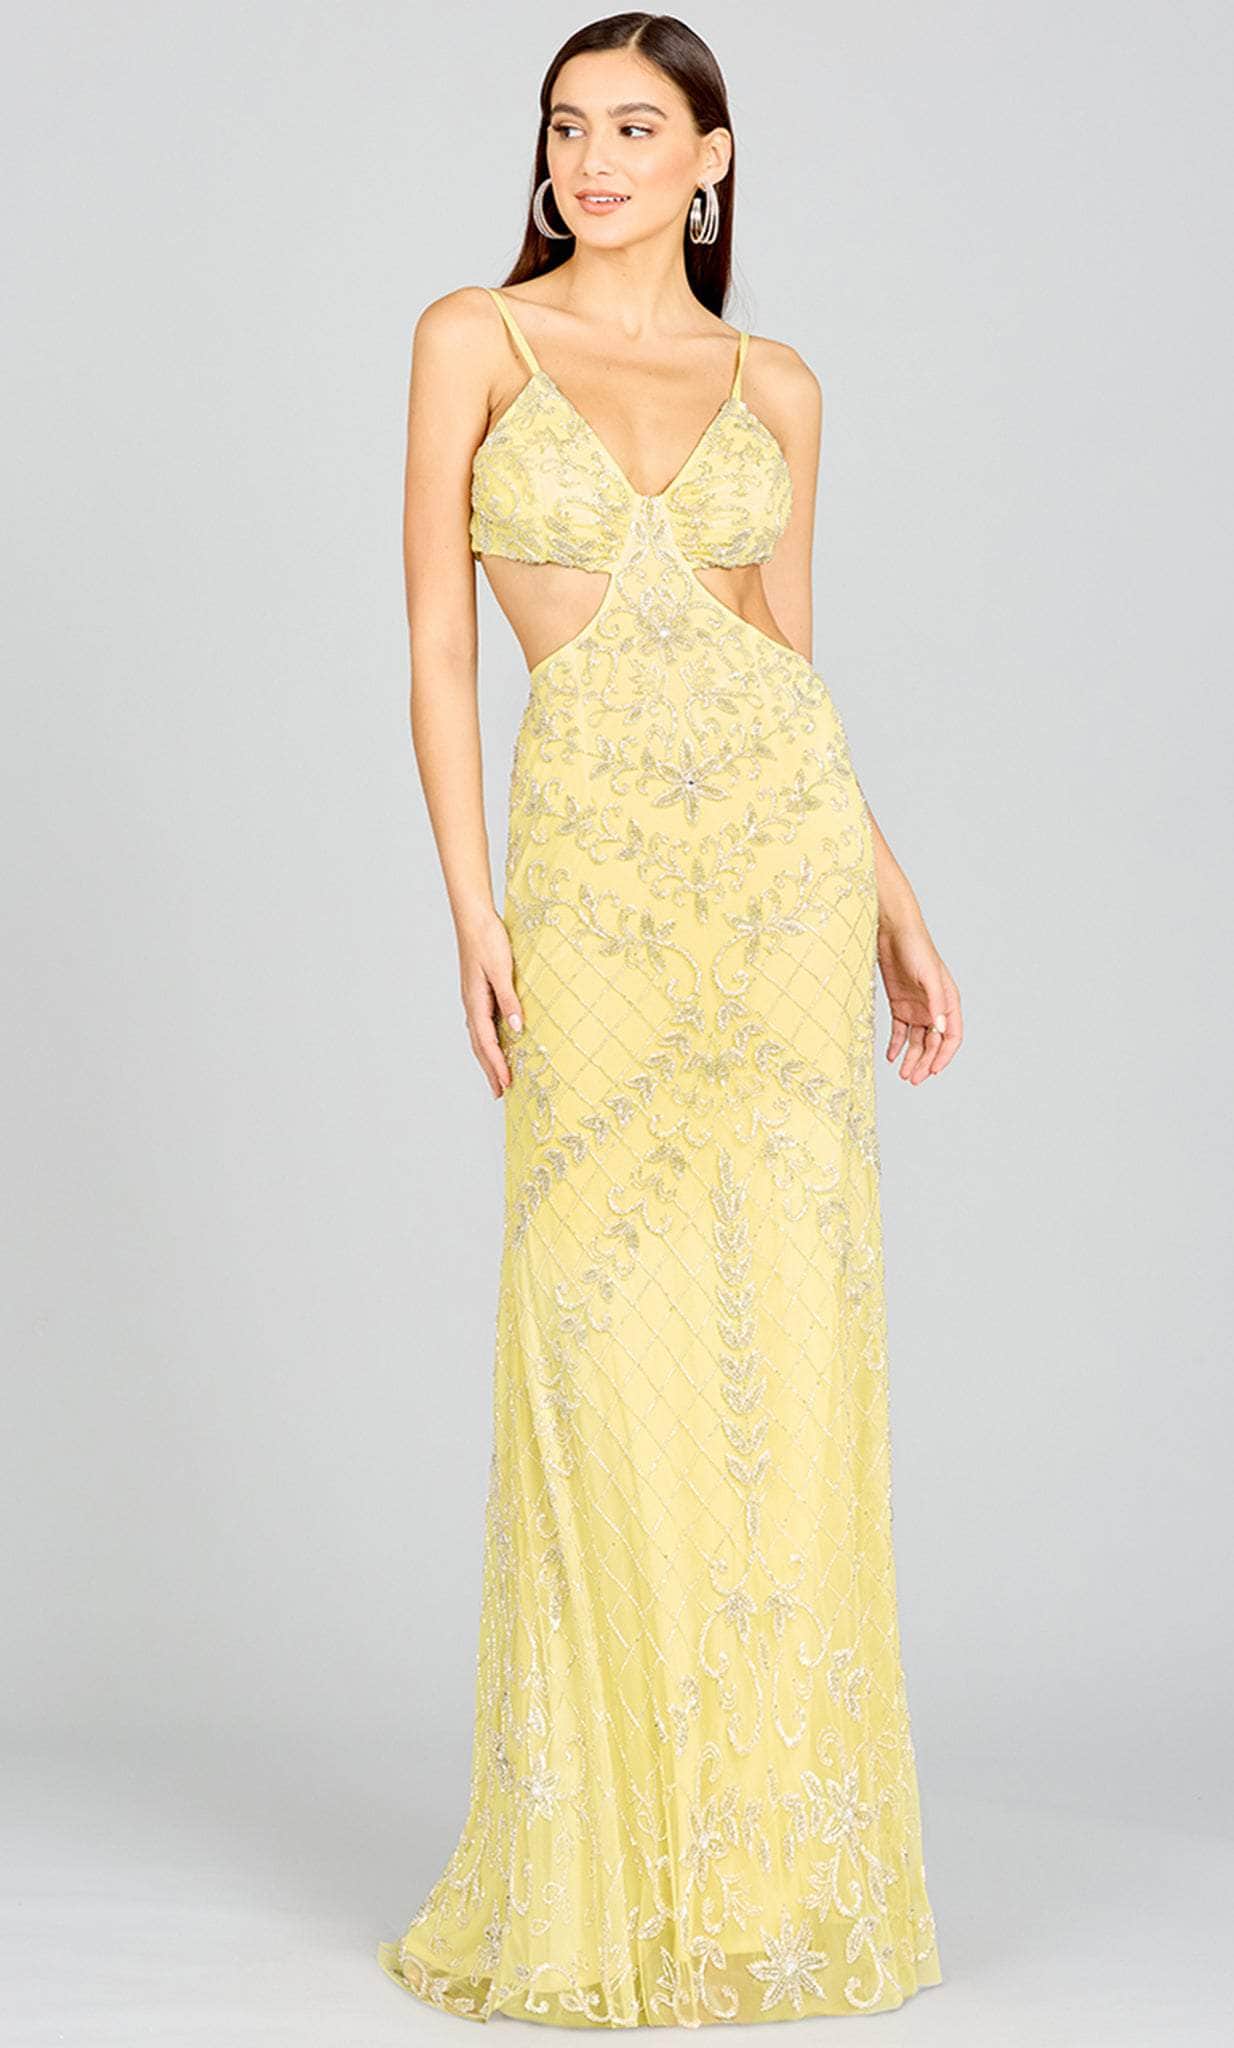 Image of Lara Dresses 9989 - Beaded Cutout Prom Dress